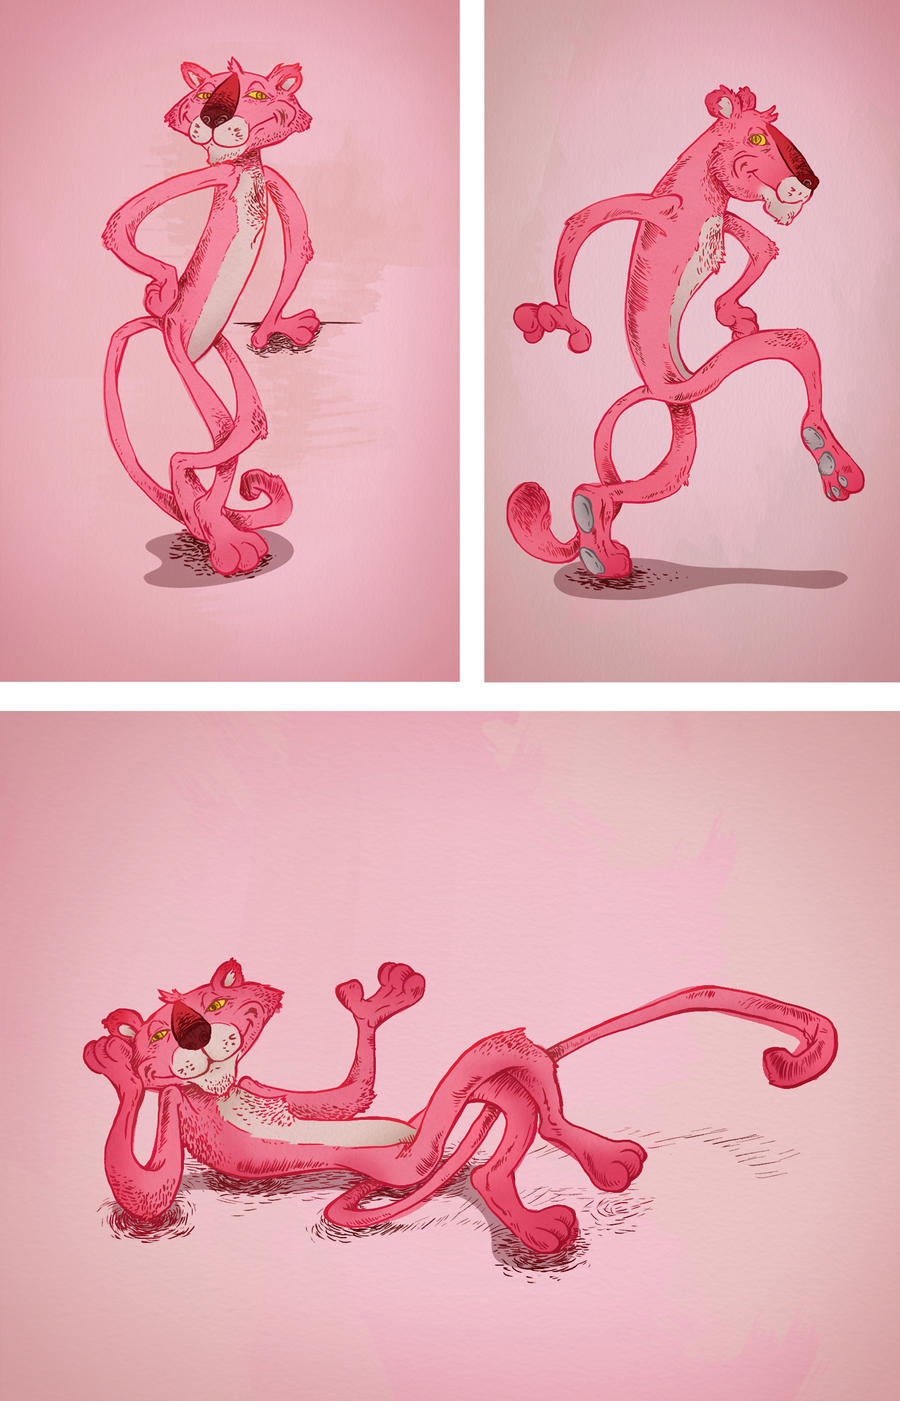 Pink Panther Original Line Artwork - Phenomenon - Drawings